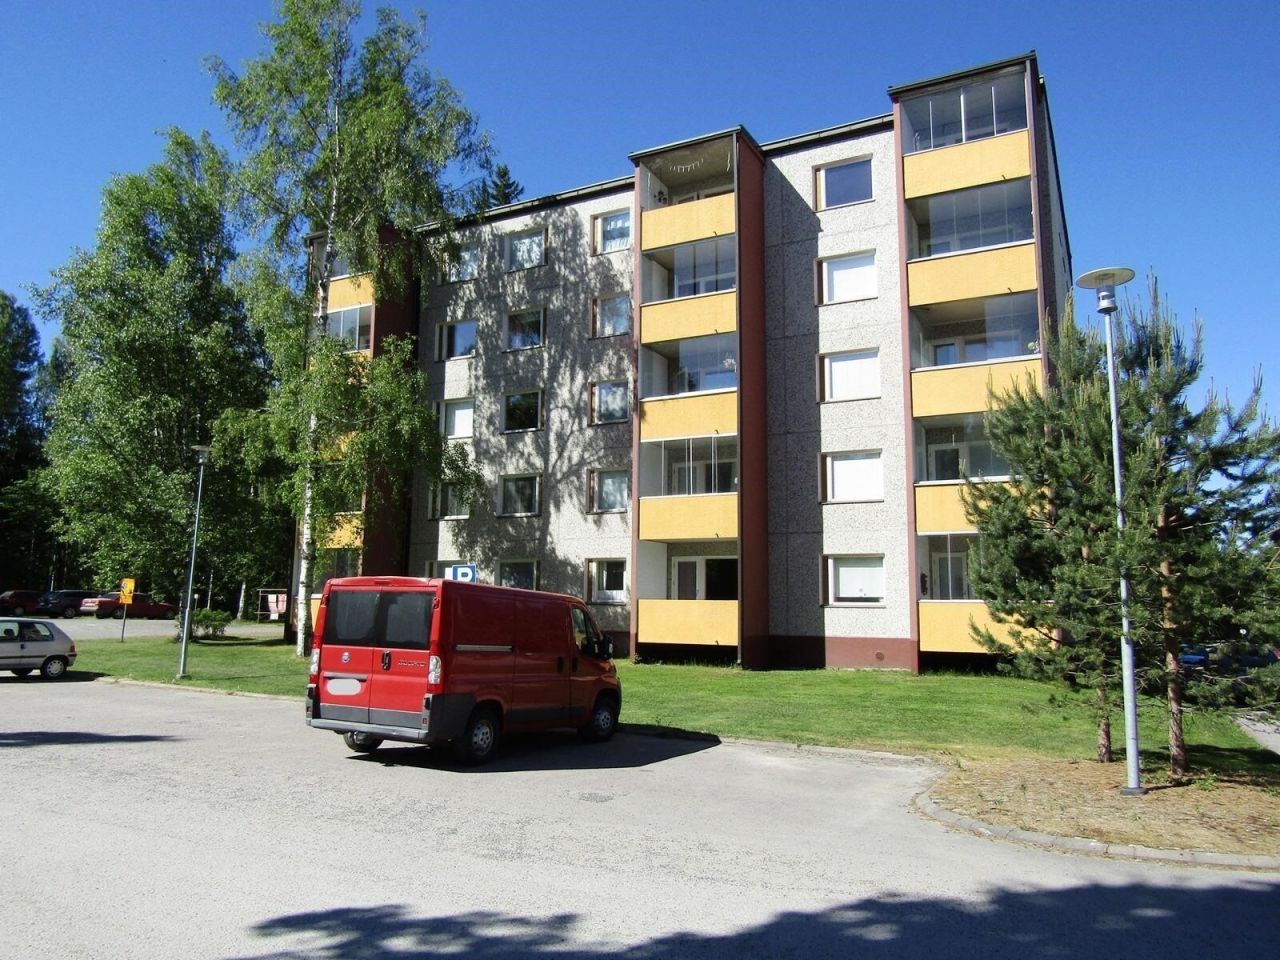 Flat in Mänttä, Finland, 35 sq.m - picture 1